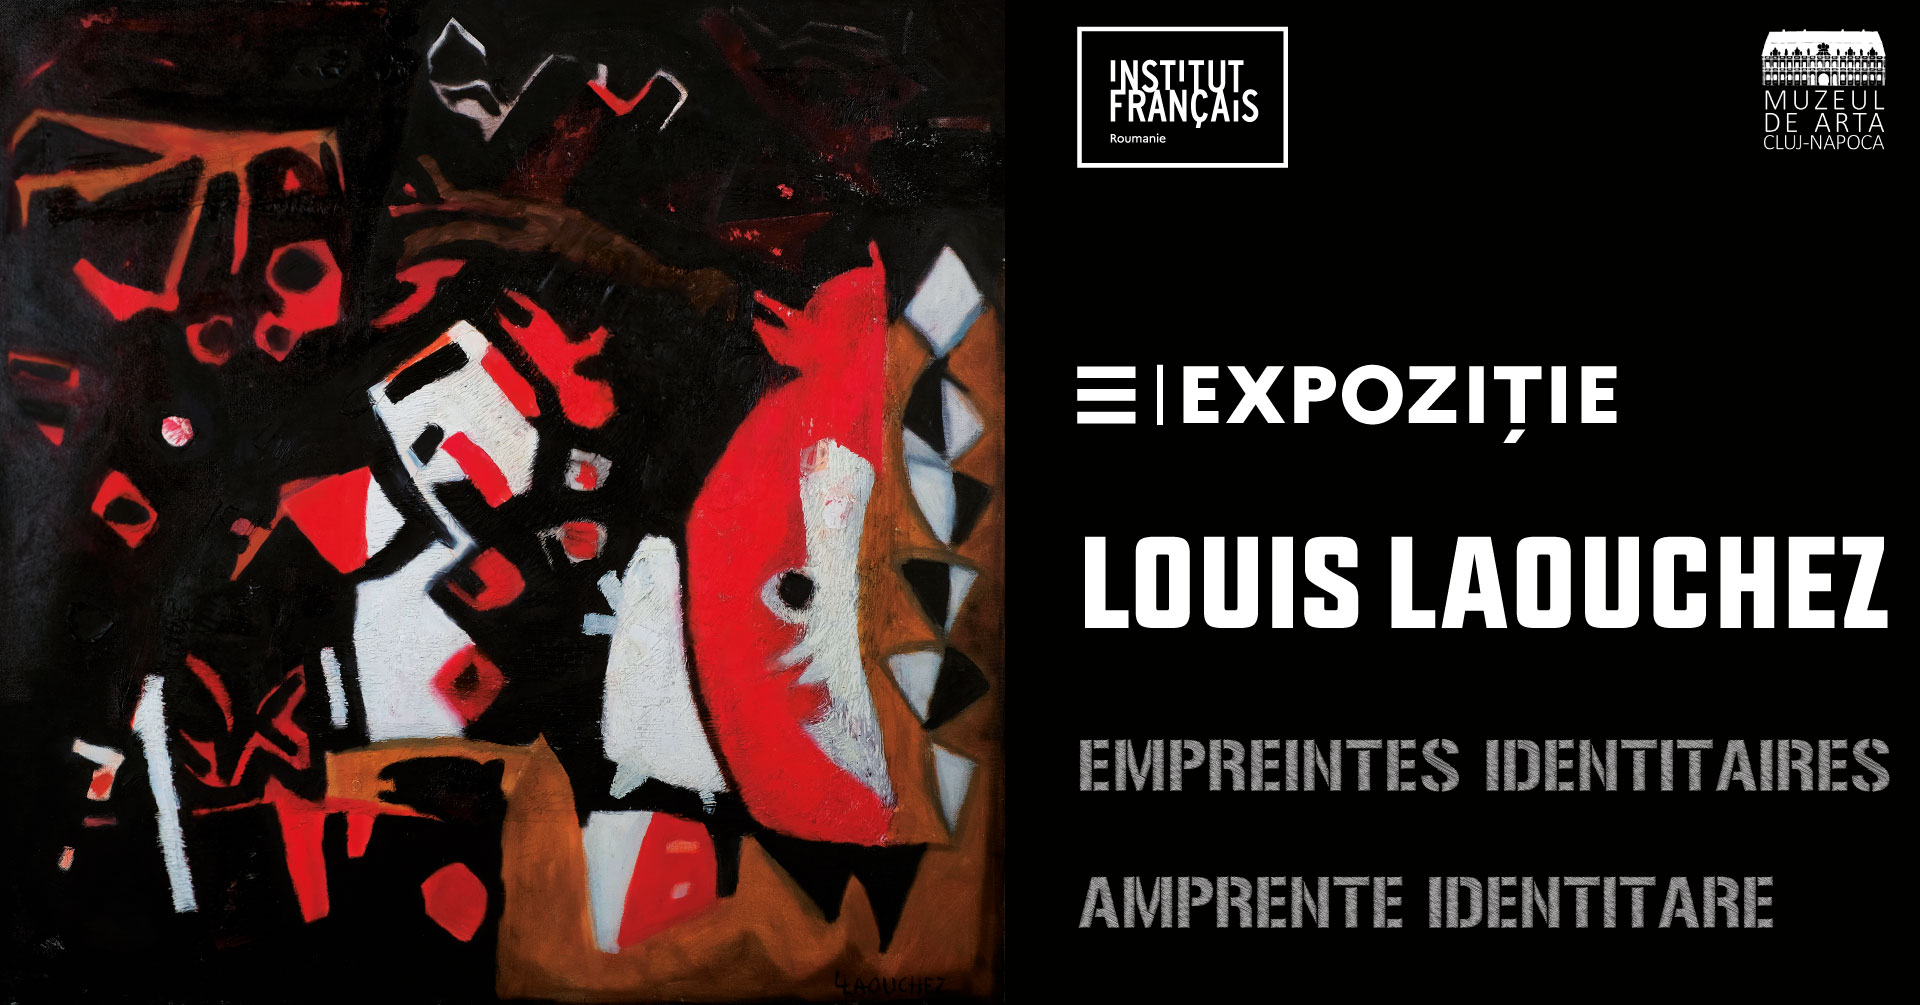 Louis Laouchez: amprente identitare